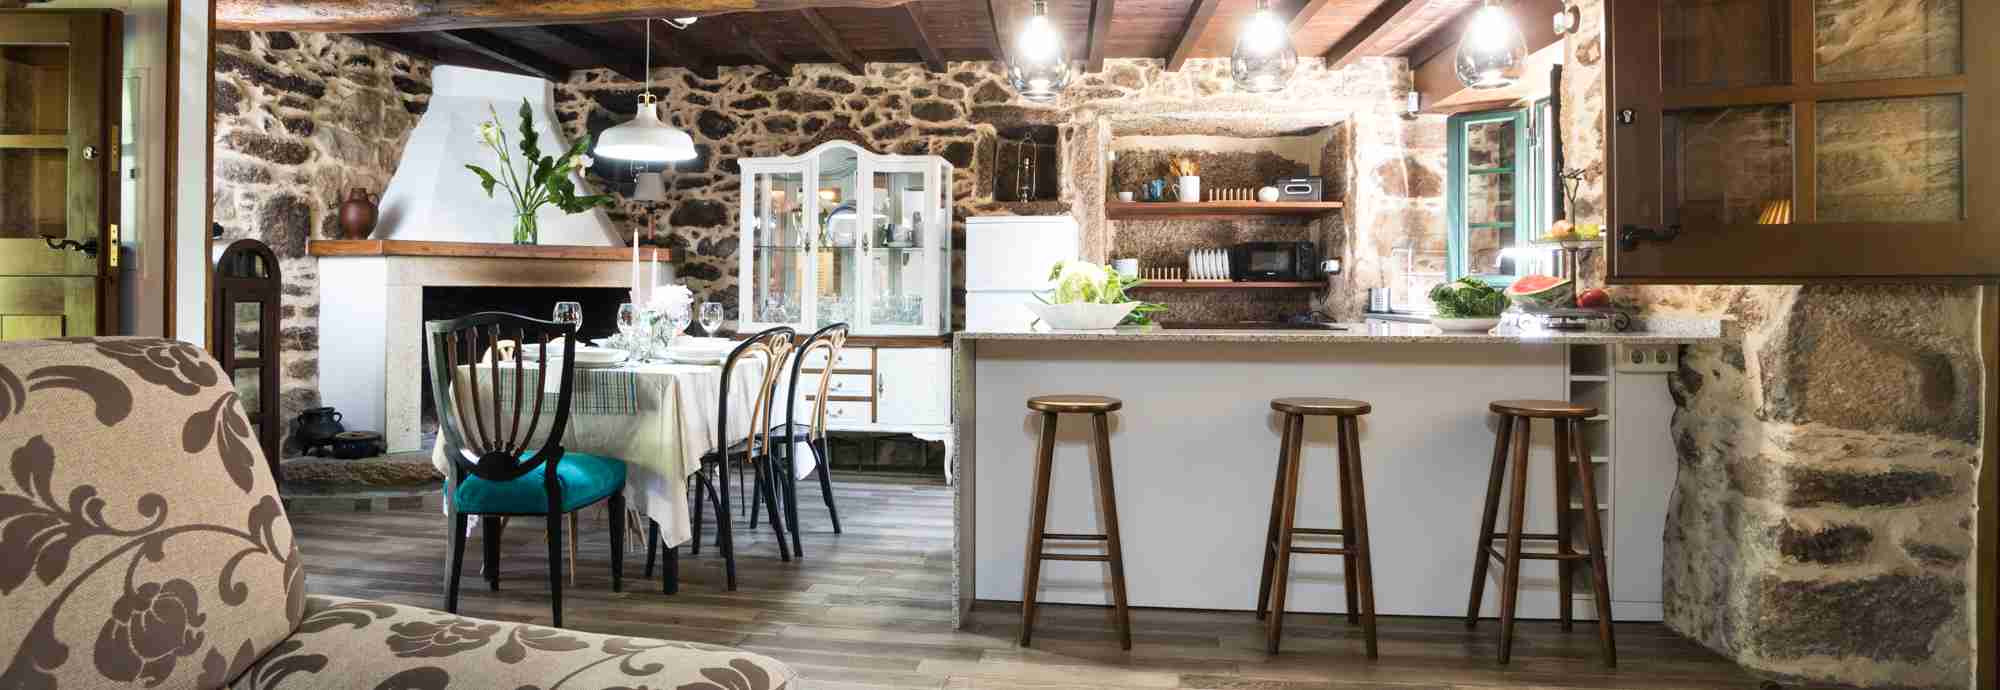 Casa rural ideal para visitar ciudades monumentales de Galicia